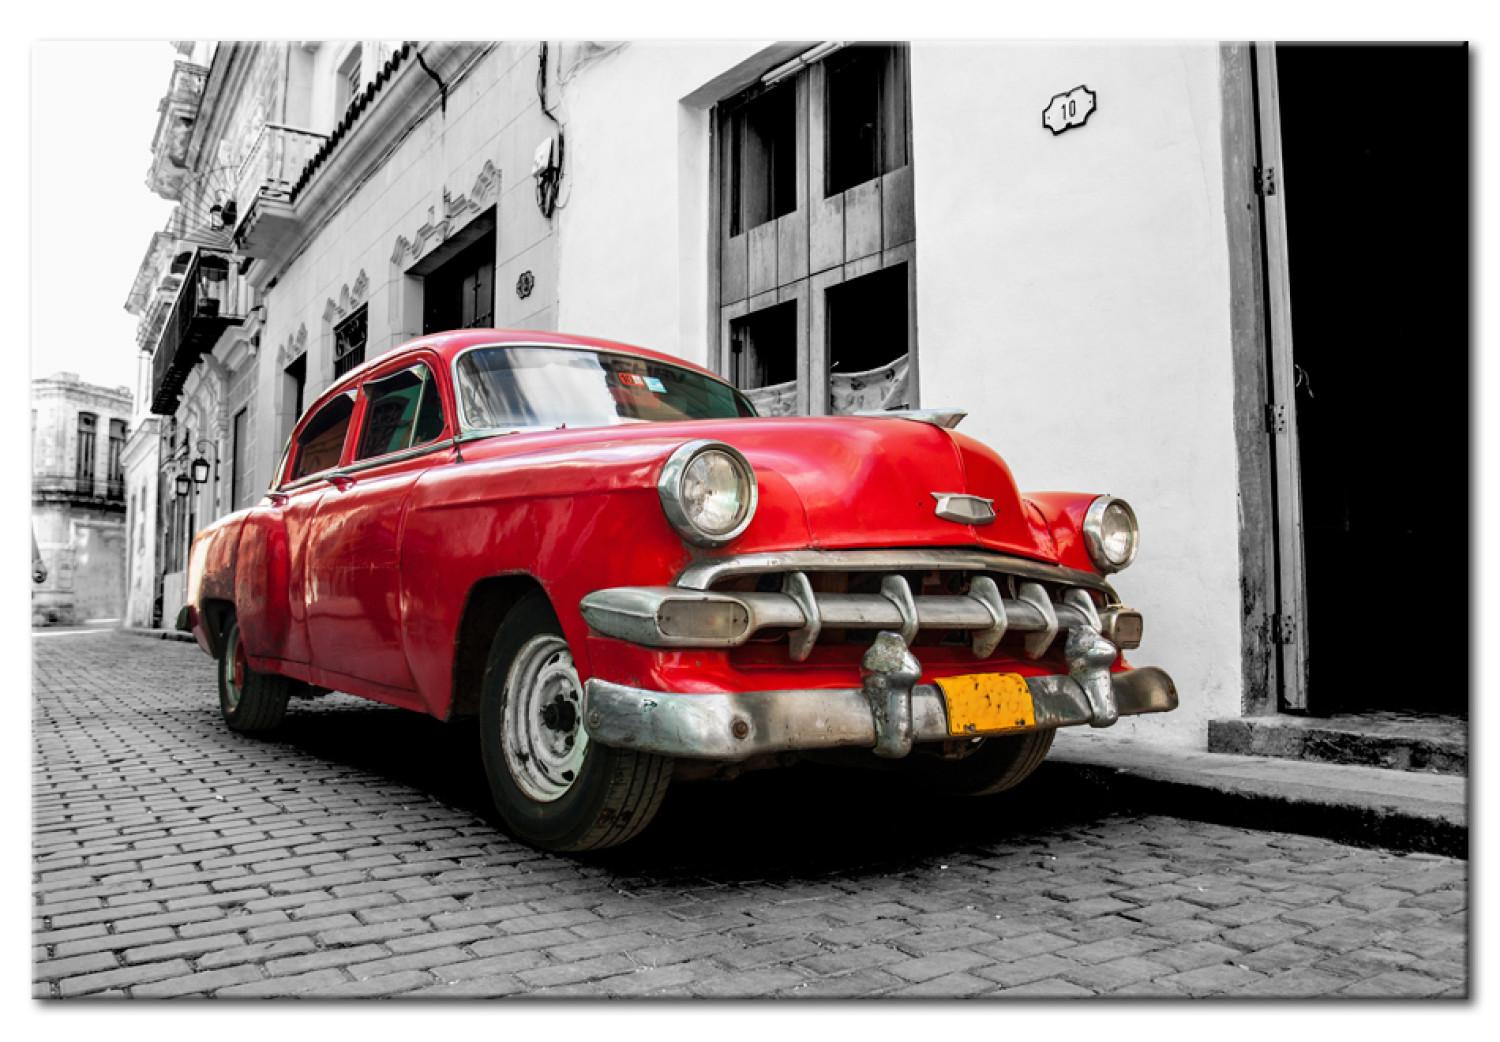 Cuadro Cuban Classic Car (Red)